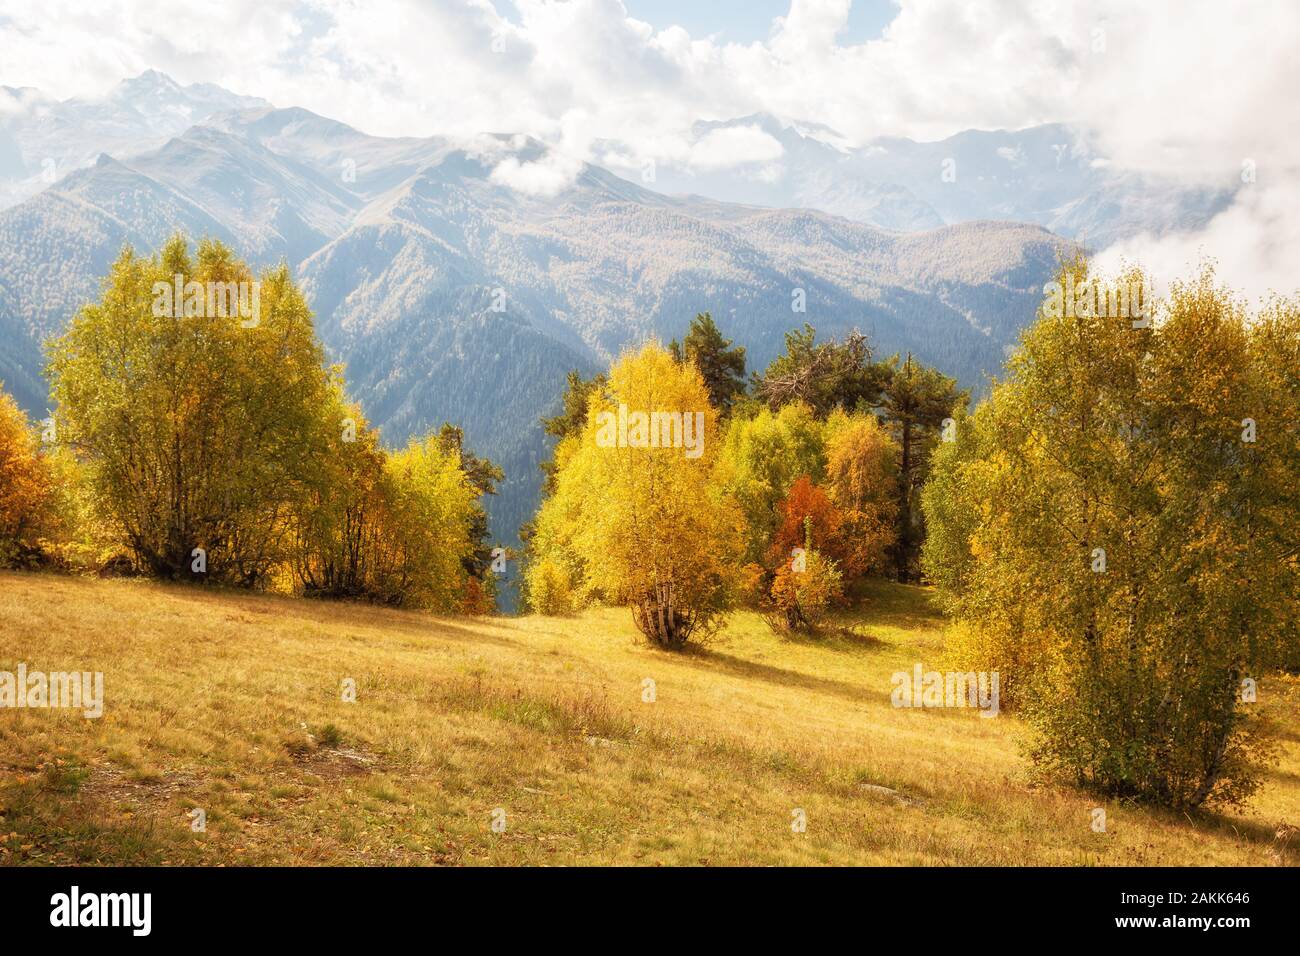 L'automne magnifique paysage de montagne. Les arbres à feuilles jaunes éclairées par le soleil dans le contexte de la chaîne de montagnes du Caucase. La Géorgie, Svaneti. Banque D'Images